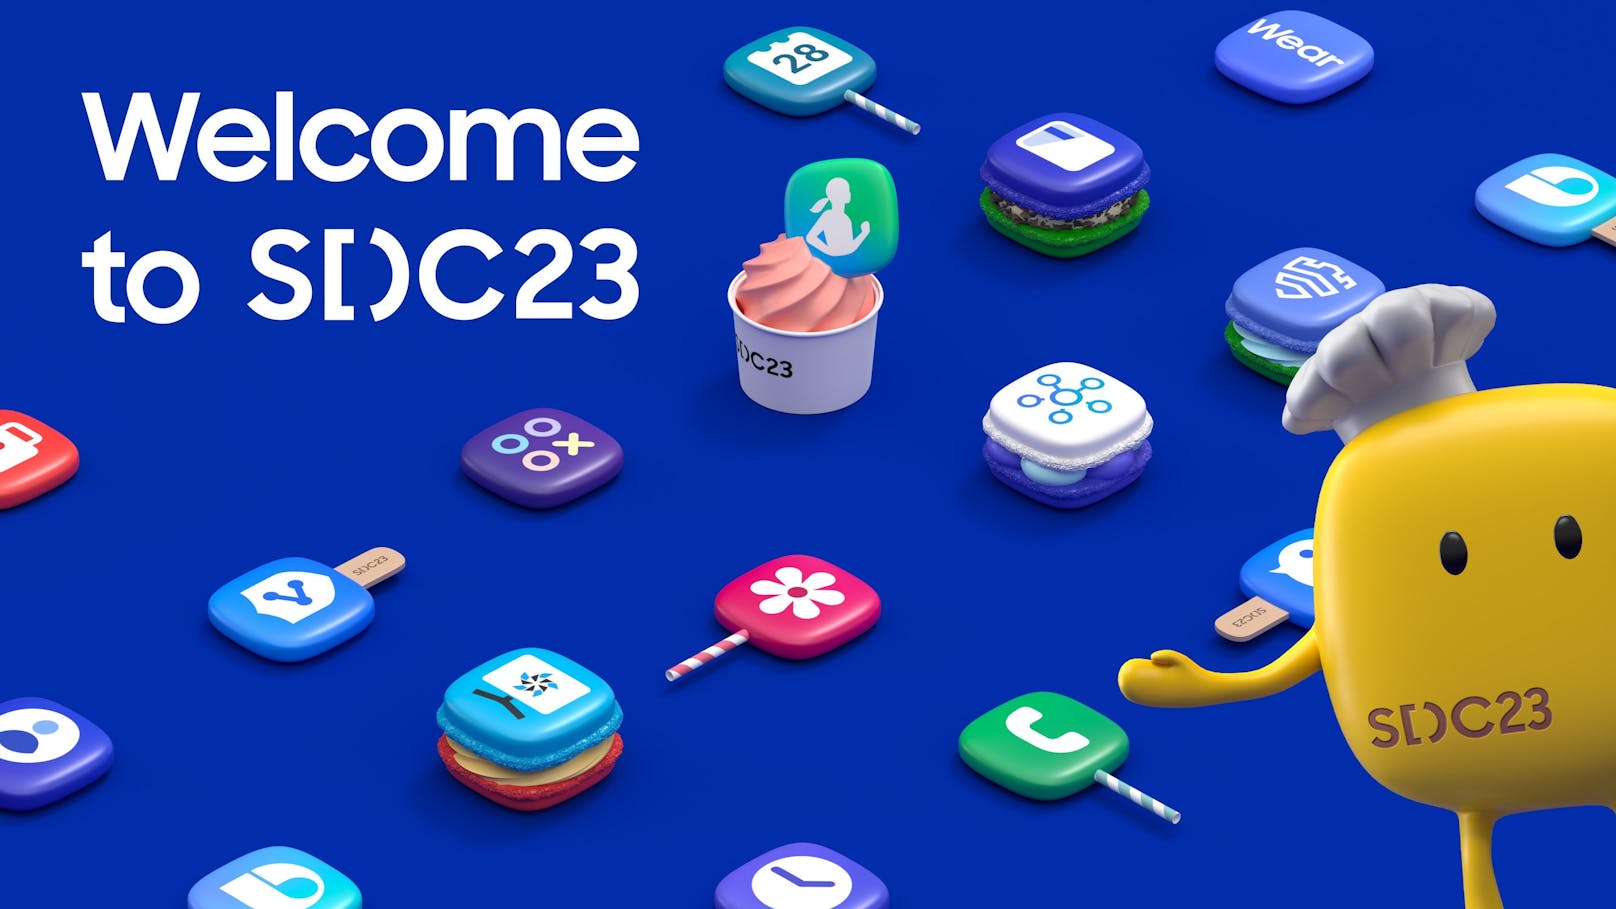 Samsung präsentiert intuitive, personalisierte und sichere Anwendungen für Entwickler an der SDC23.